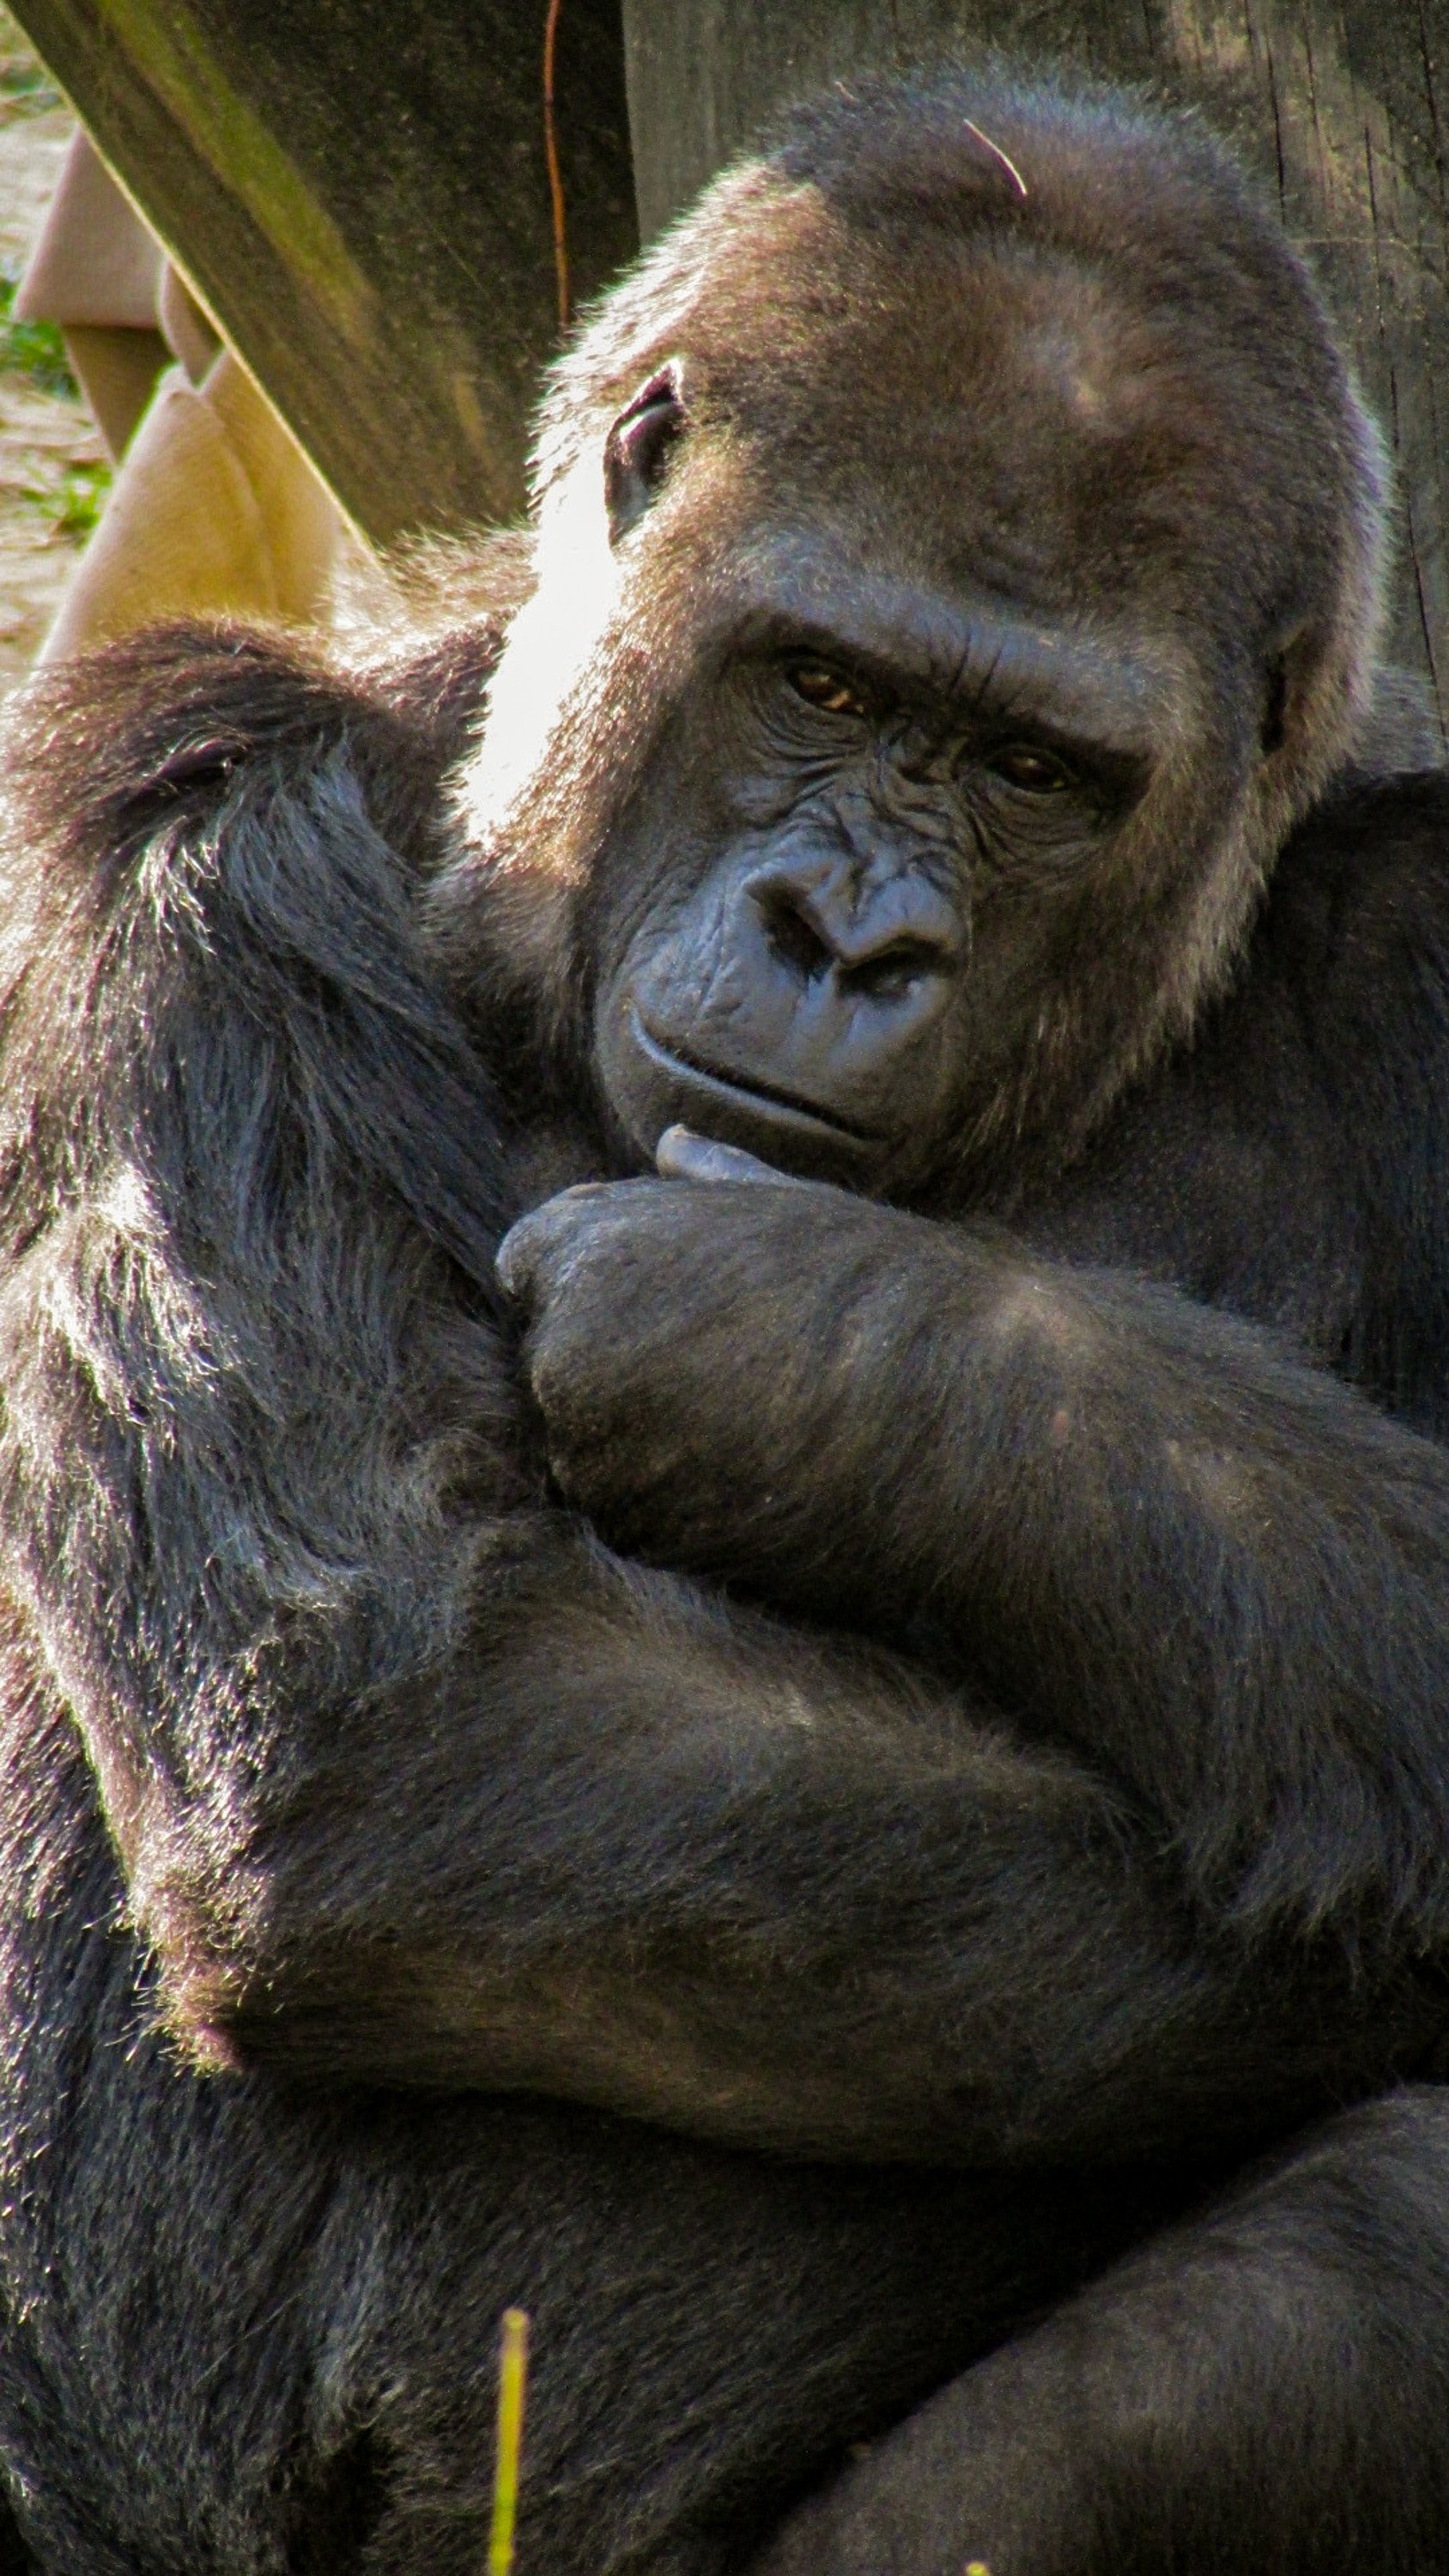 joshua j cotten 1141777 unsplash.jpg?resize=1200,630 - Découvrez le selfie du garde forestier avec deux gorilles prenant la pose!